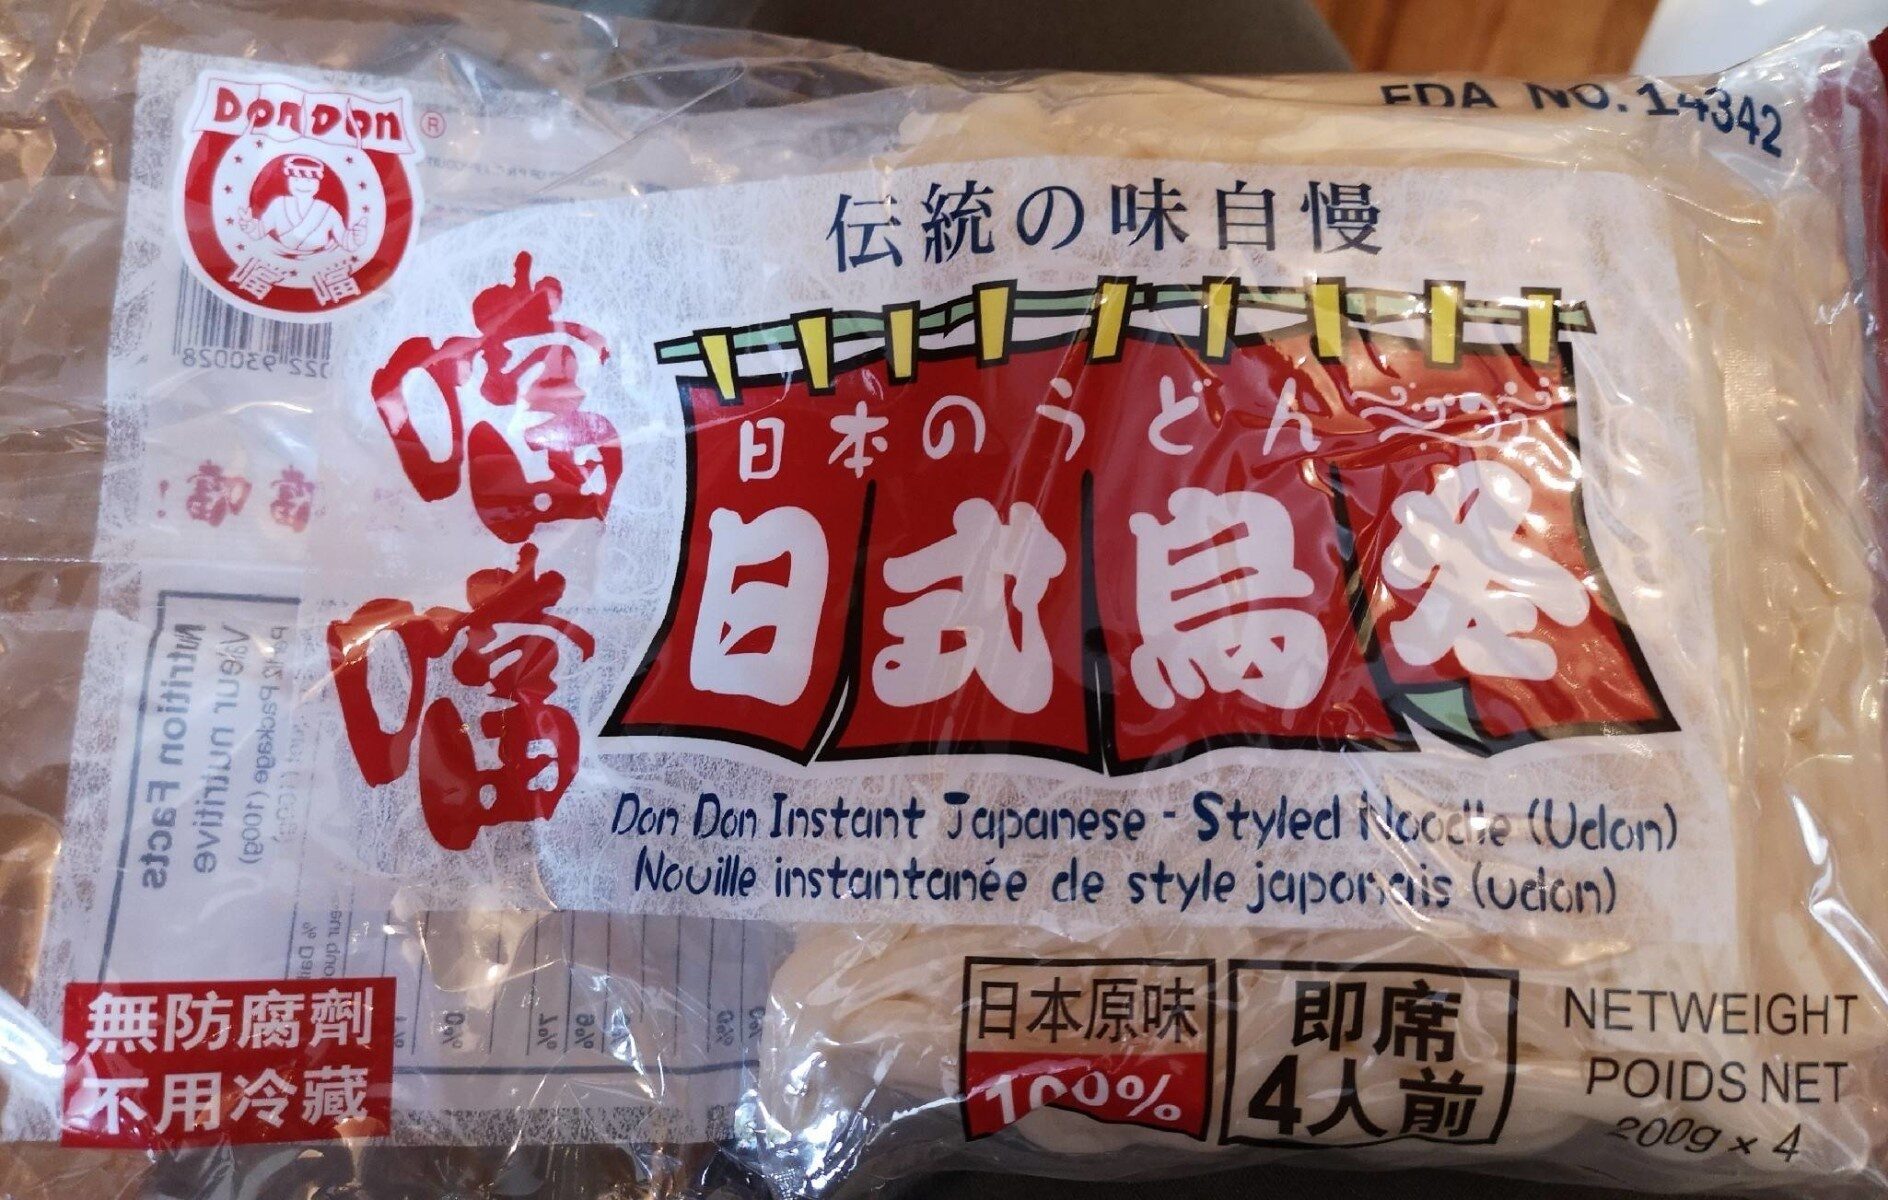 Nouilles instantanées de style japonais (udon) - Product